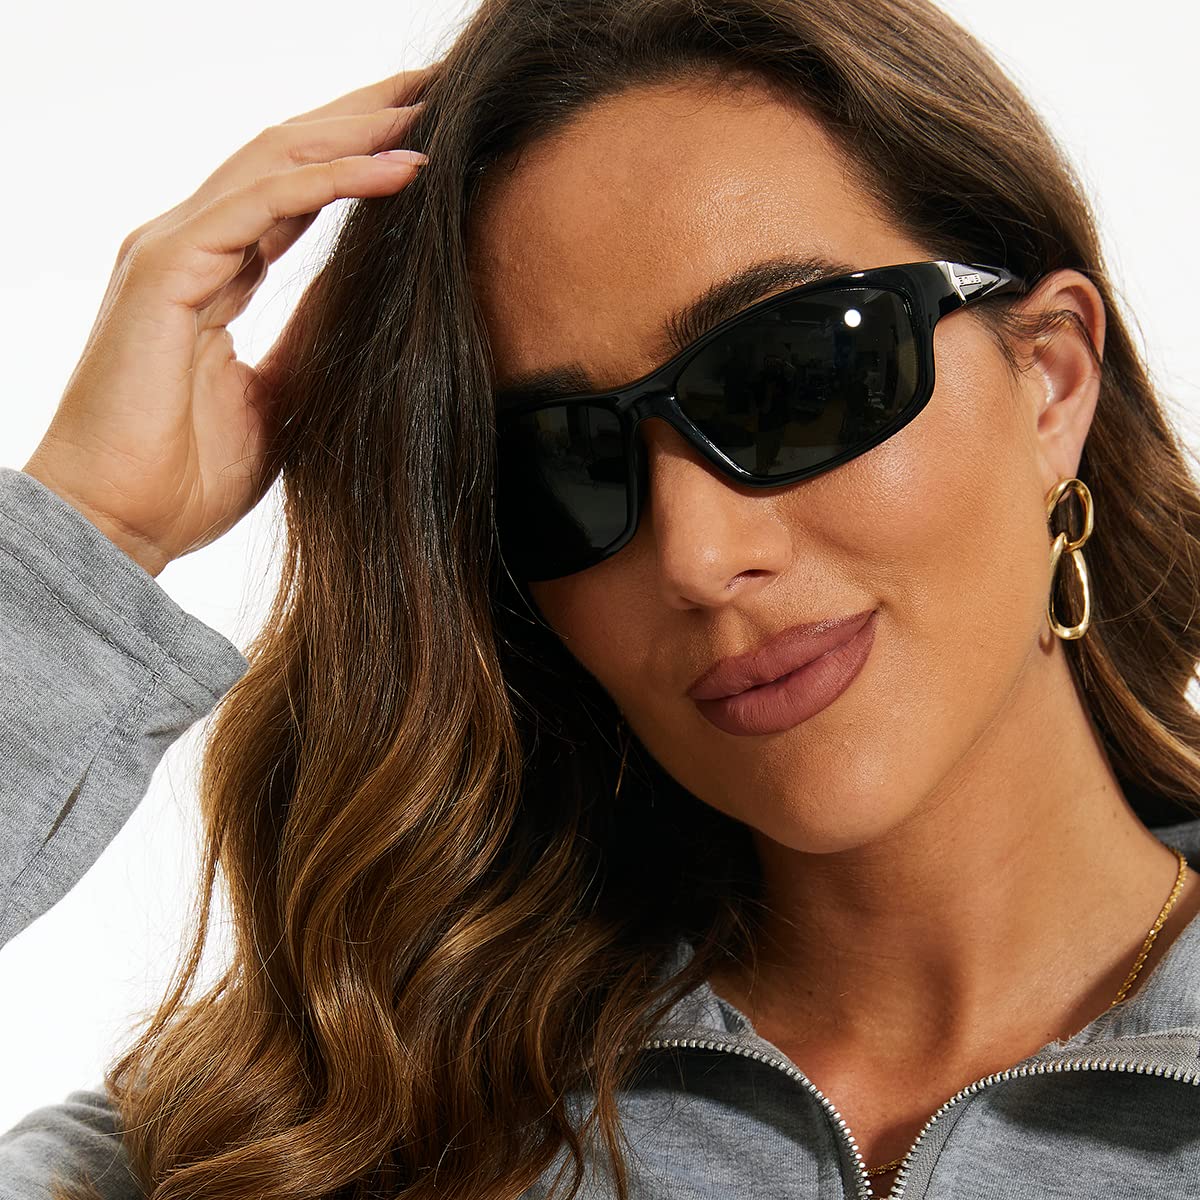 Bnus corning glass lens polarized sunglasses for men & Women italy made w. High Performance Plastic Lens option